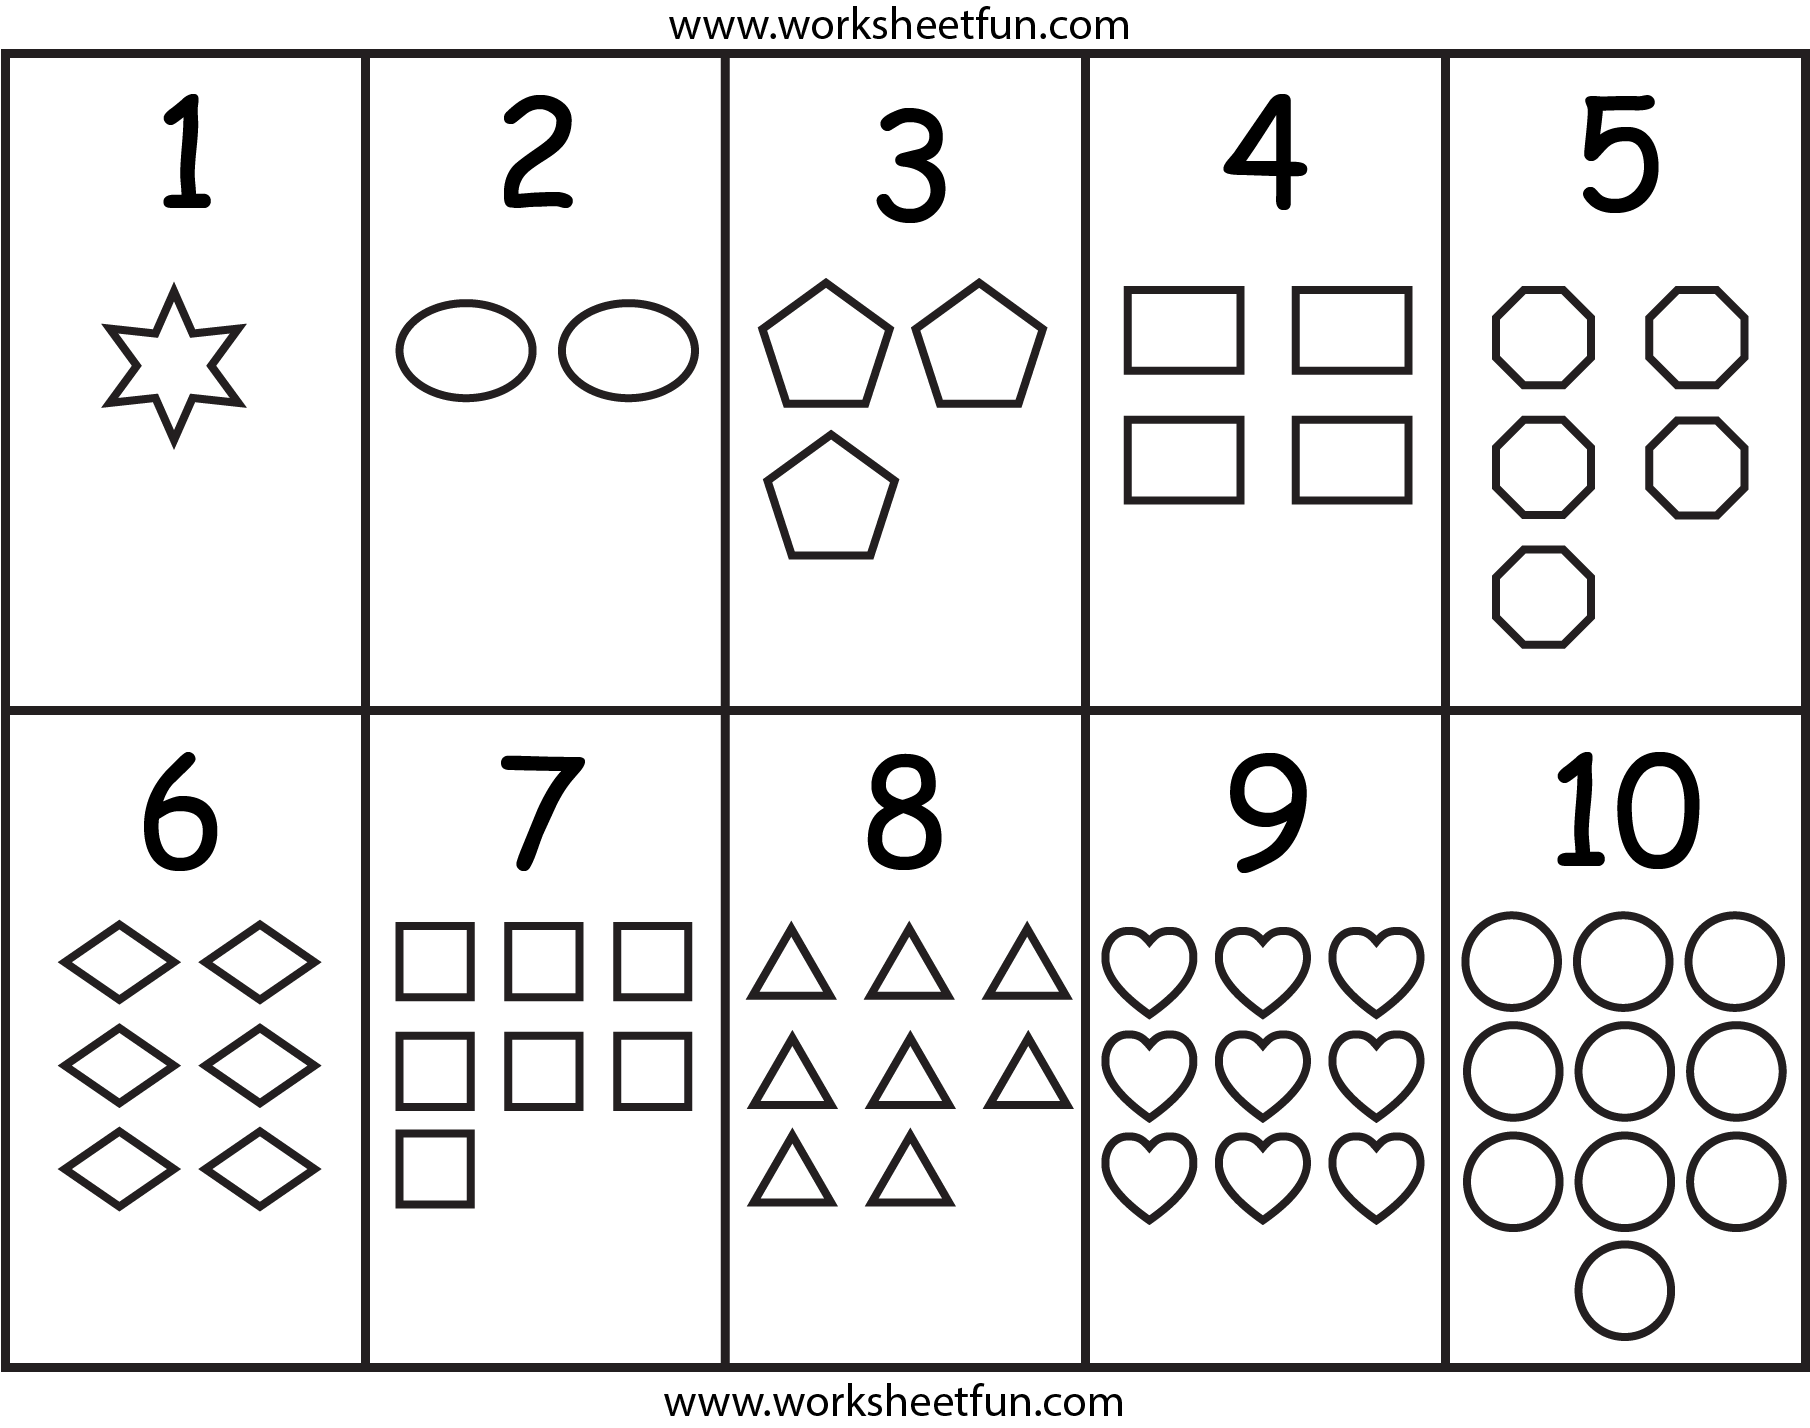 8-best-images-of-number-chart-printable-for-preschool-kindergarten-number-worksheets-1-10